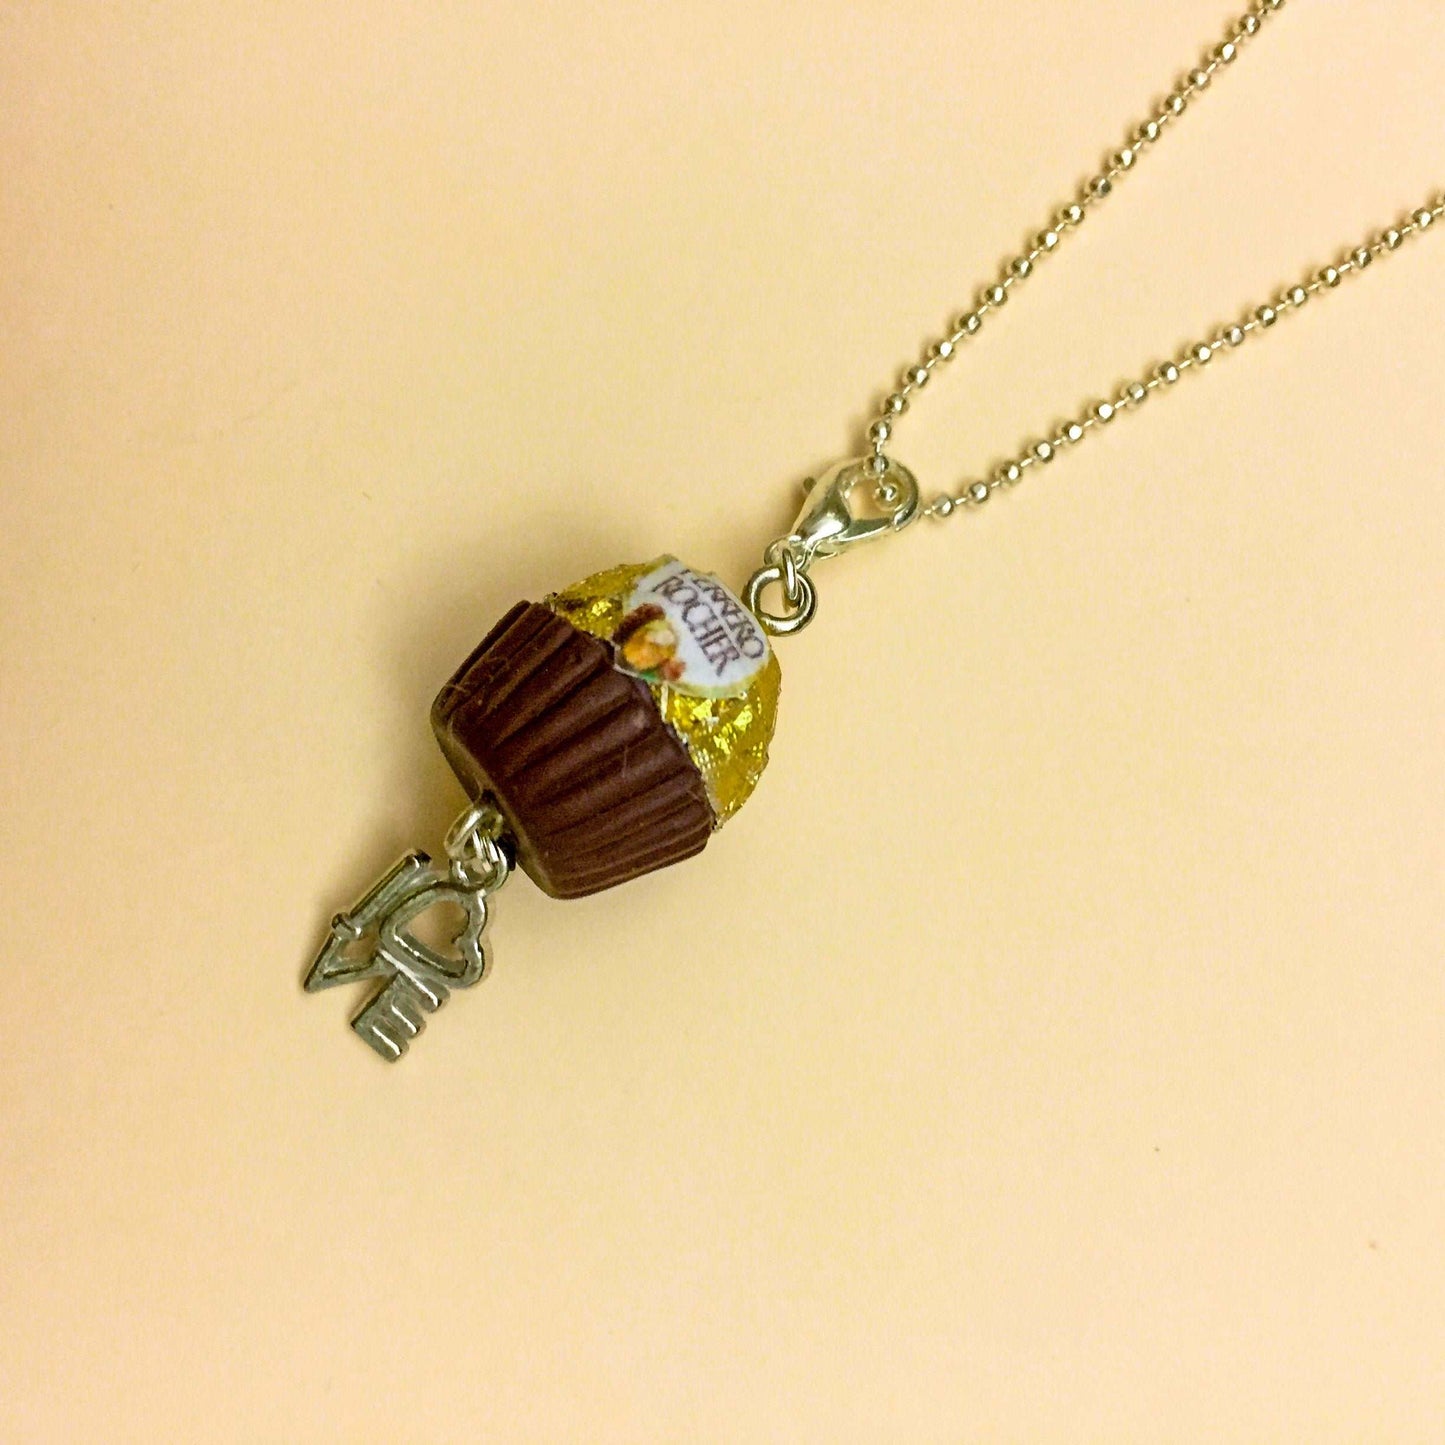 Ferraro Rocher Miniature Charm Pendant Necklace